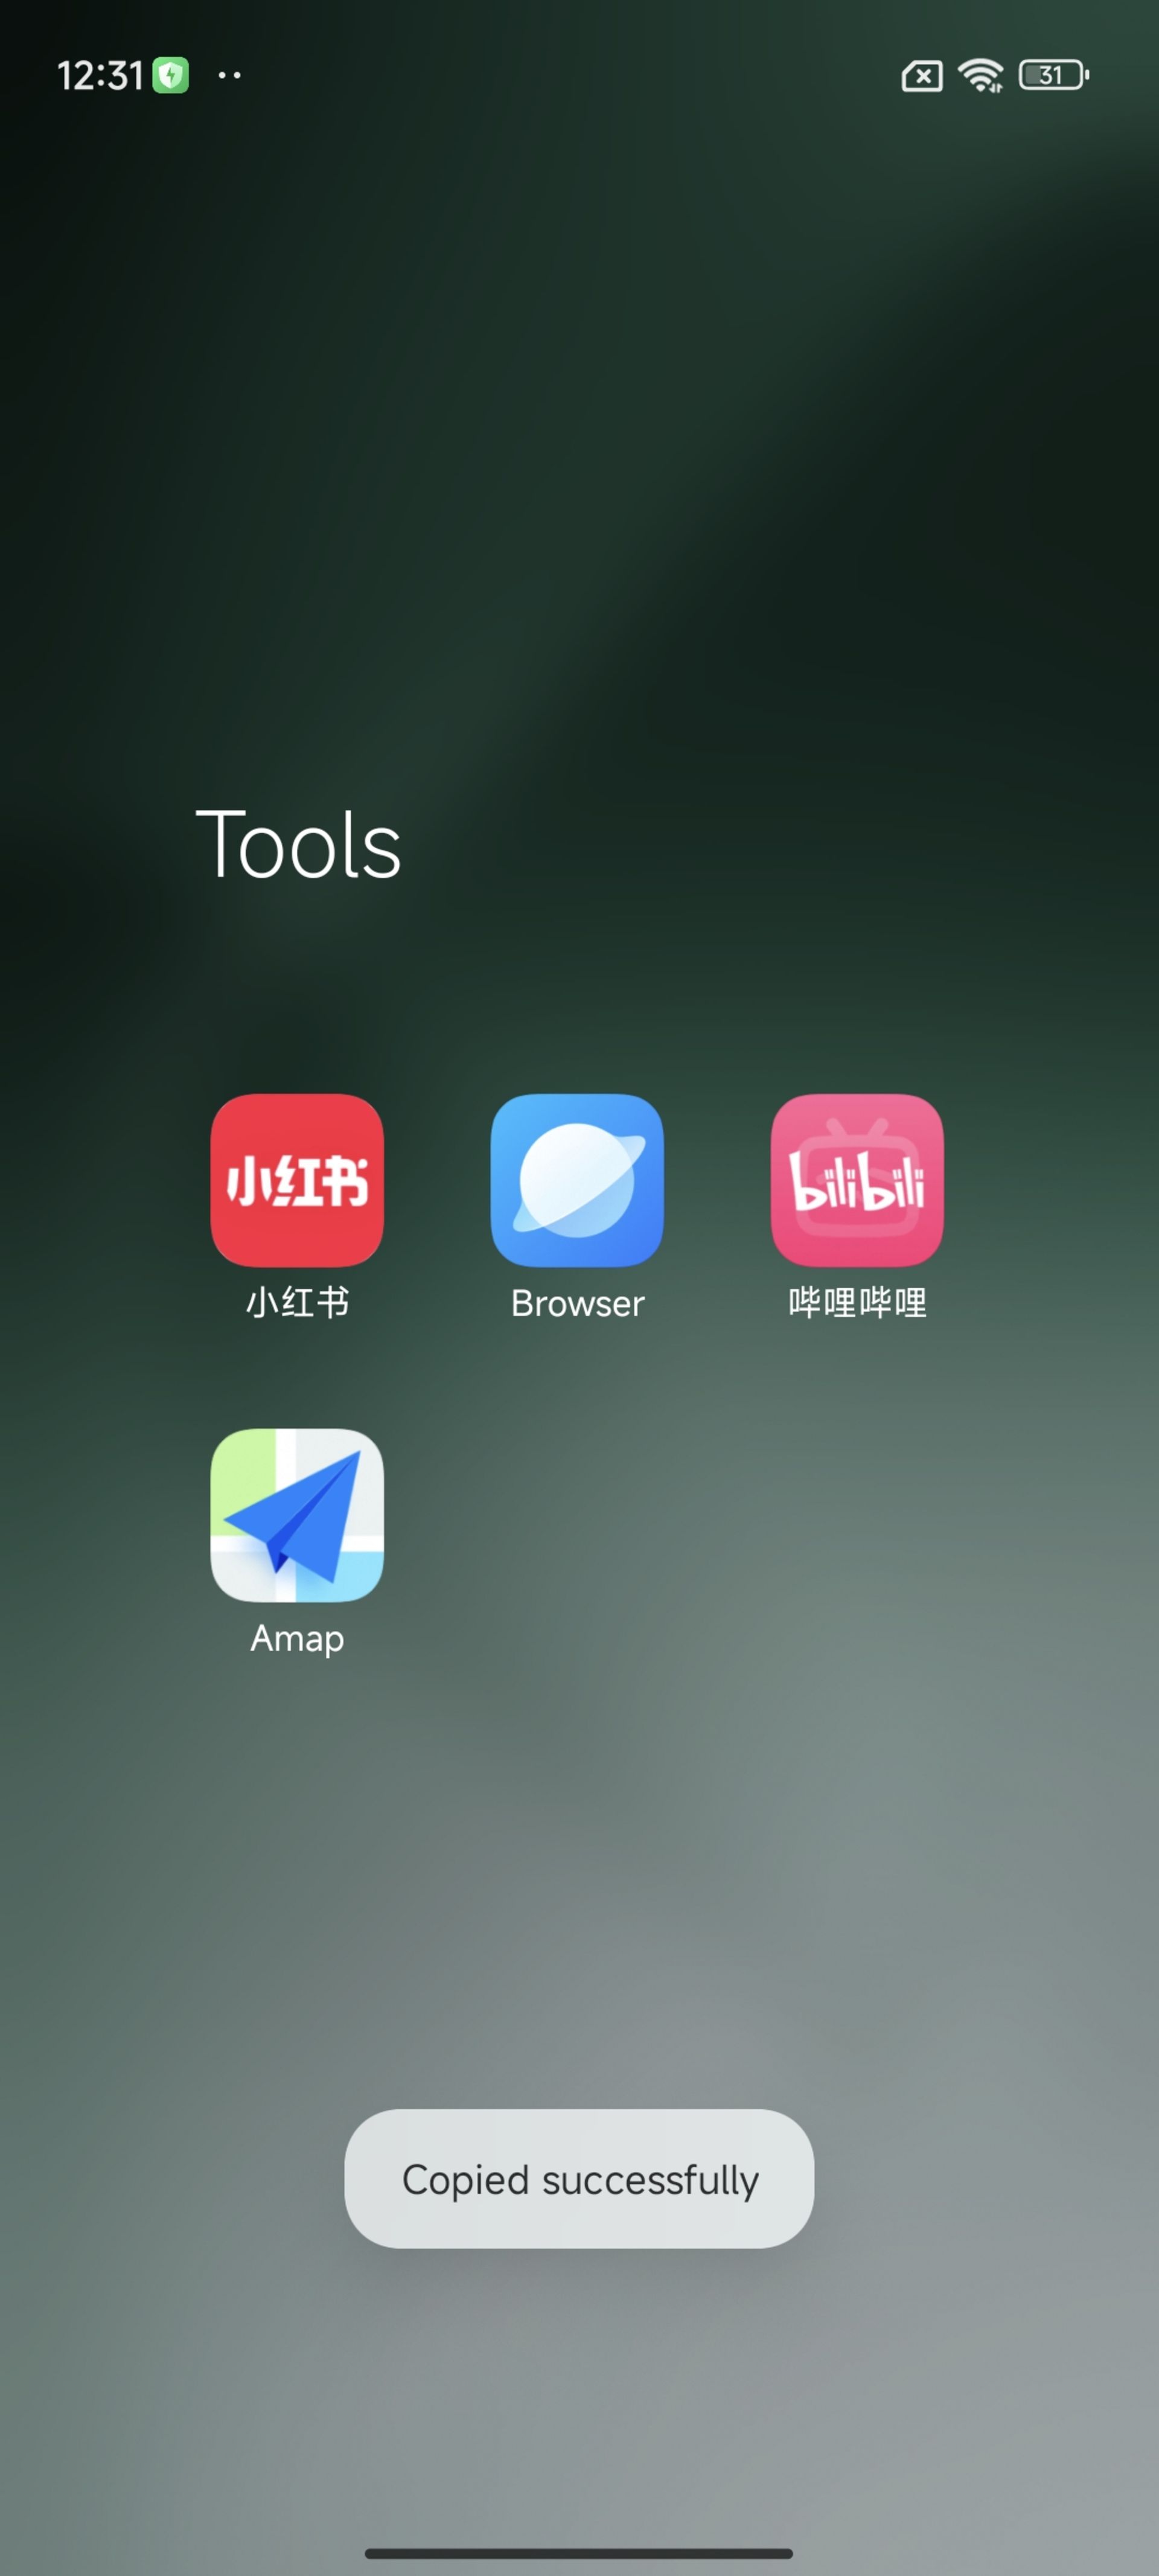 اپ‌های زائد و تبلیغاتی در نسخه چینی HyperOS